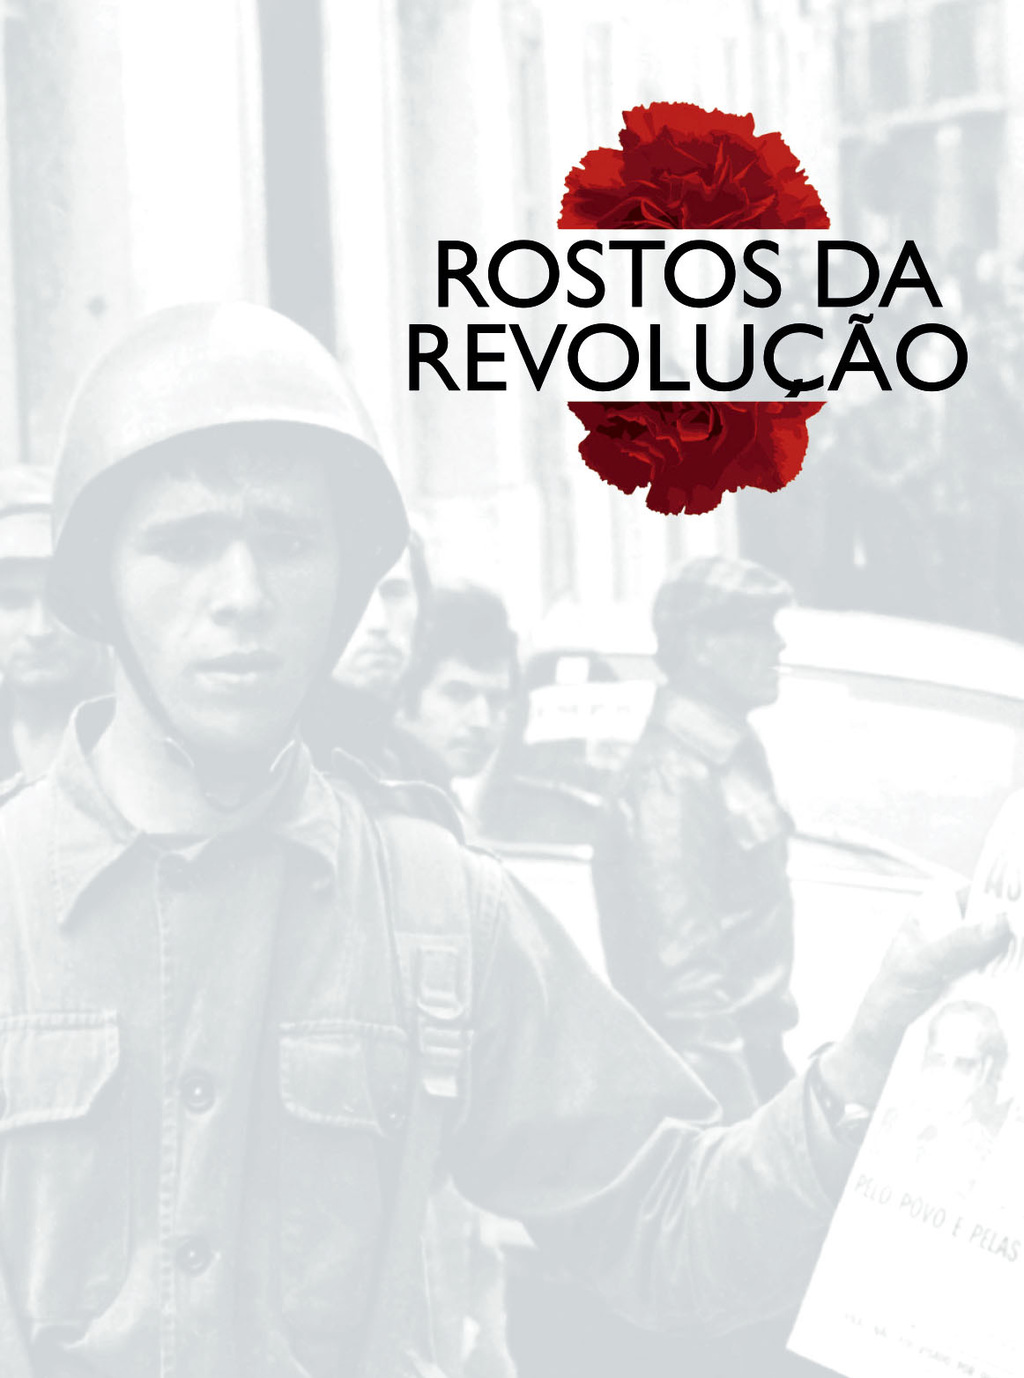 Exposição “Rostos da Revolução”  Caricaturas de António e Fotografias de Carlos Gil recordam a Re...